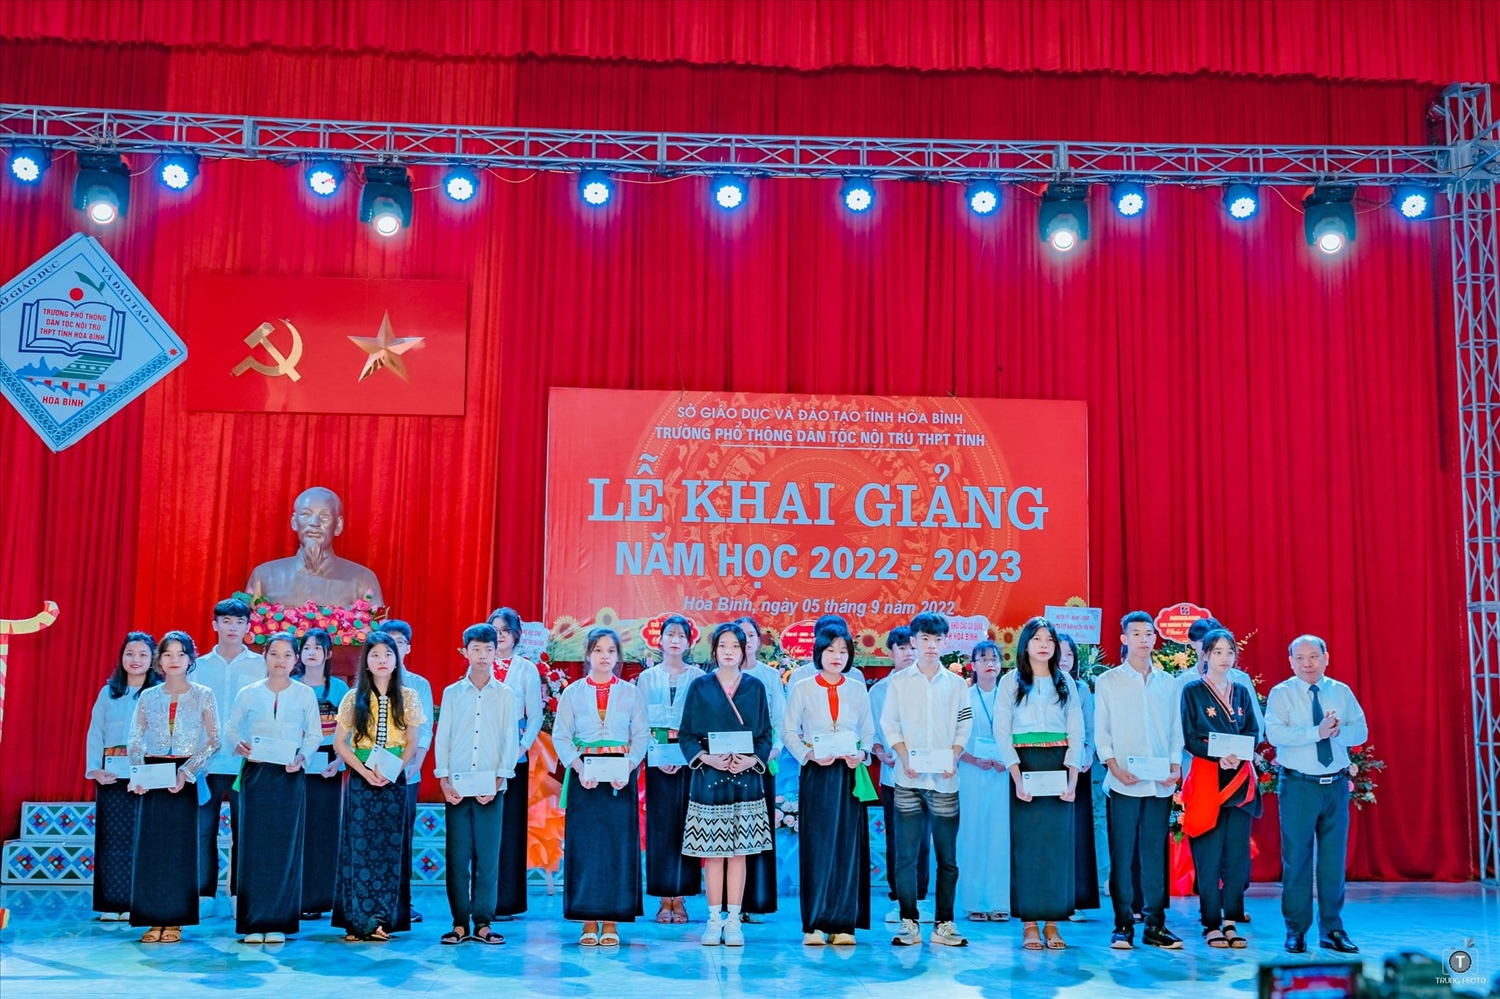 Các em học sinh Trường PTDTNT tỉnh Hòa Bình được tặng quà trong ngày Lễ khai giảng năm học mới 2022-2023